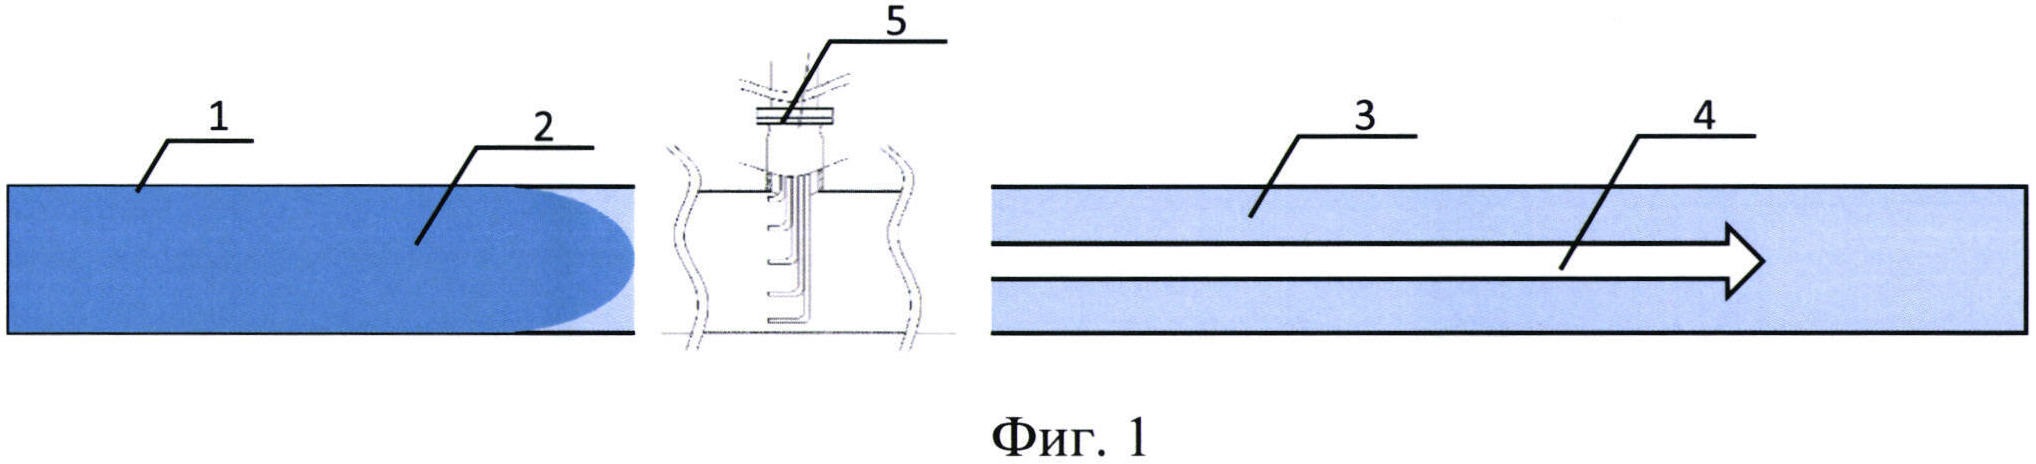 Способ определения объема смеси последовательно перекачиваемых по трубопроводам жидкостей, имеющих различные качественные характеристики